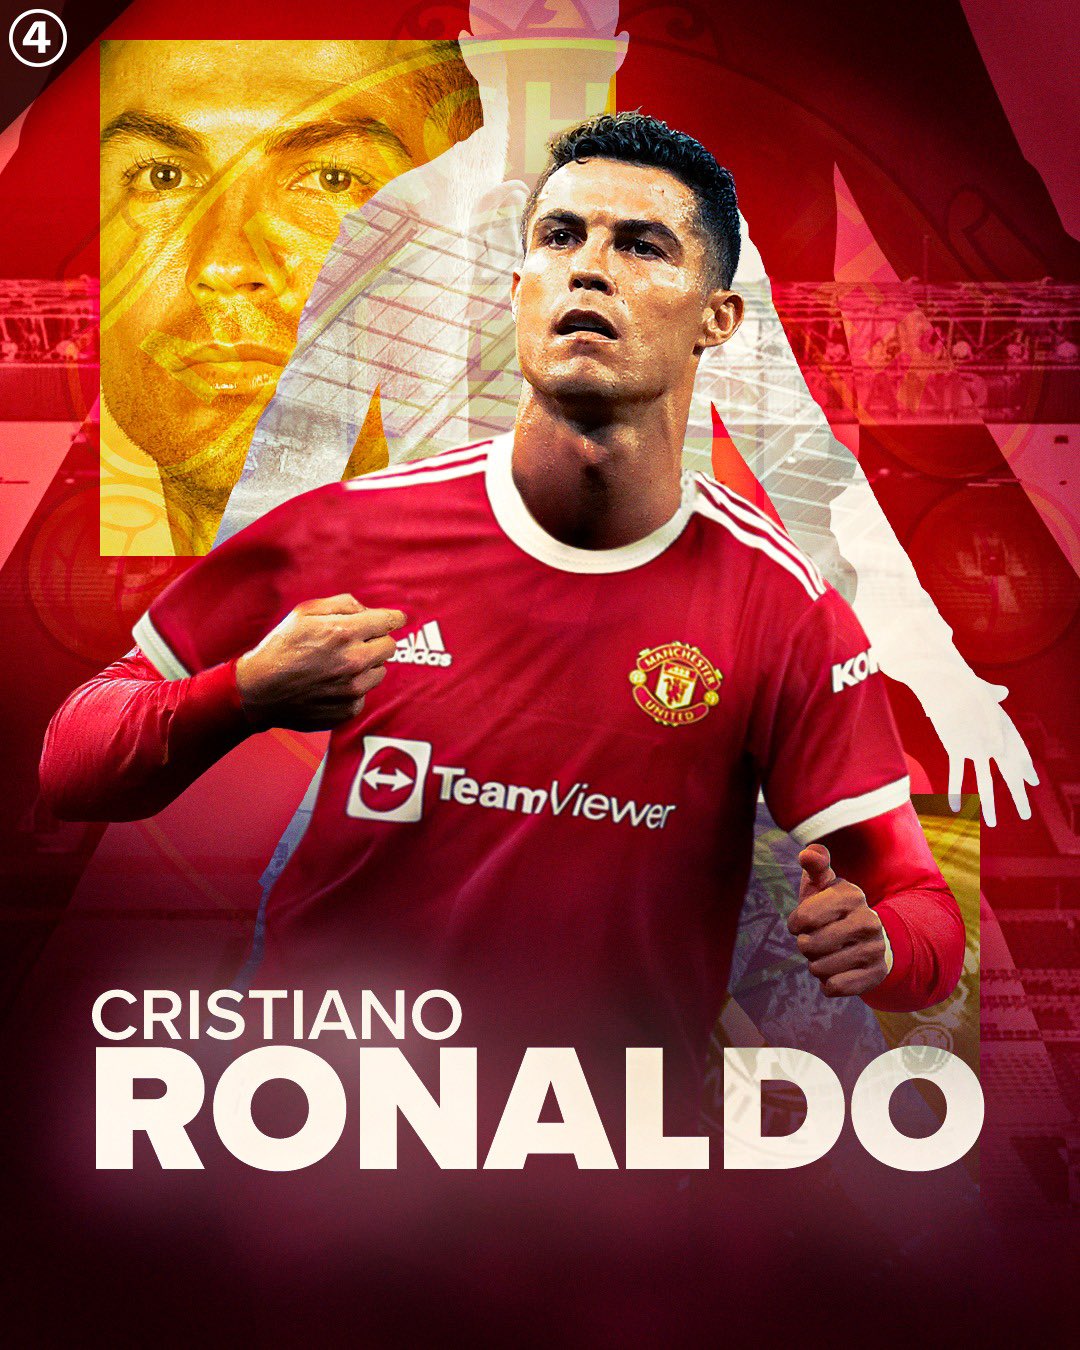 Free Cristiano Ronaldo Manchester United Wallpaper Downloads 100  Cristiano Ronaldo Manchester United Wallpapers for FREE  Wallpaperscom